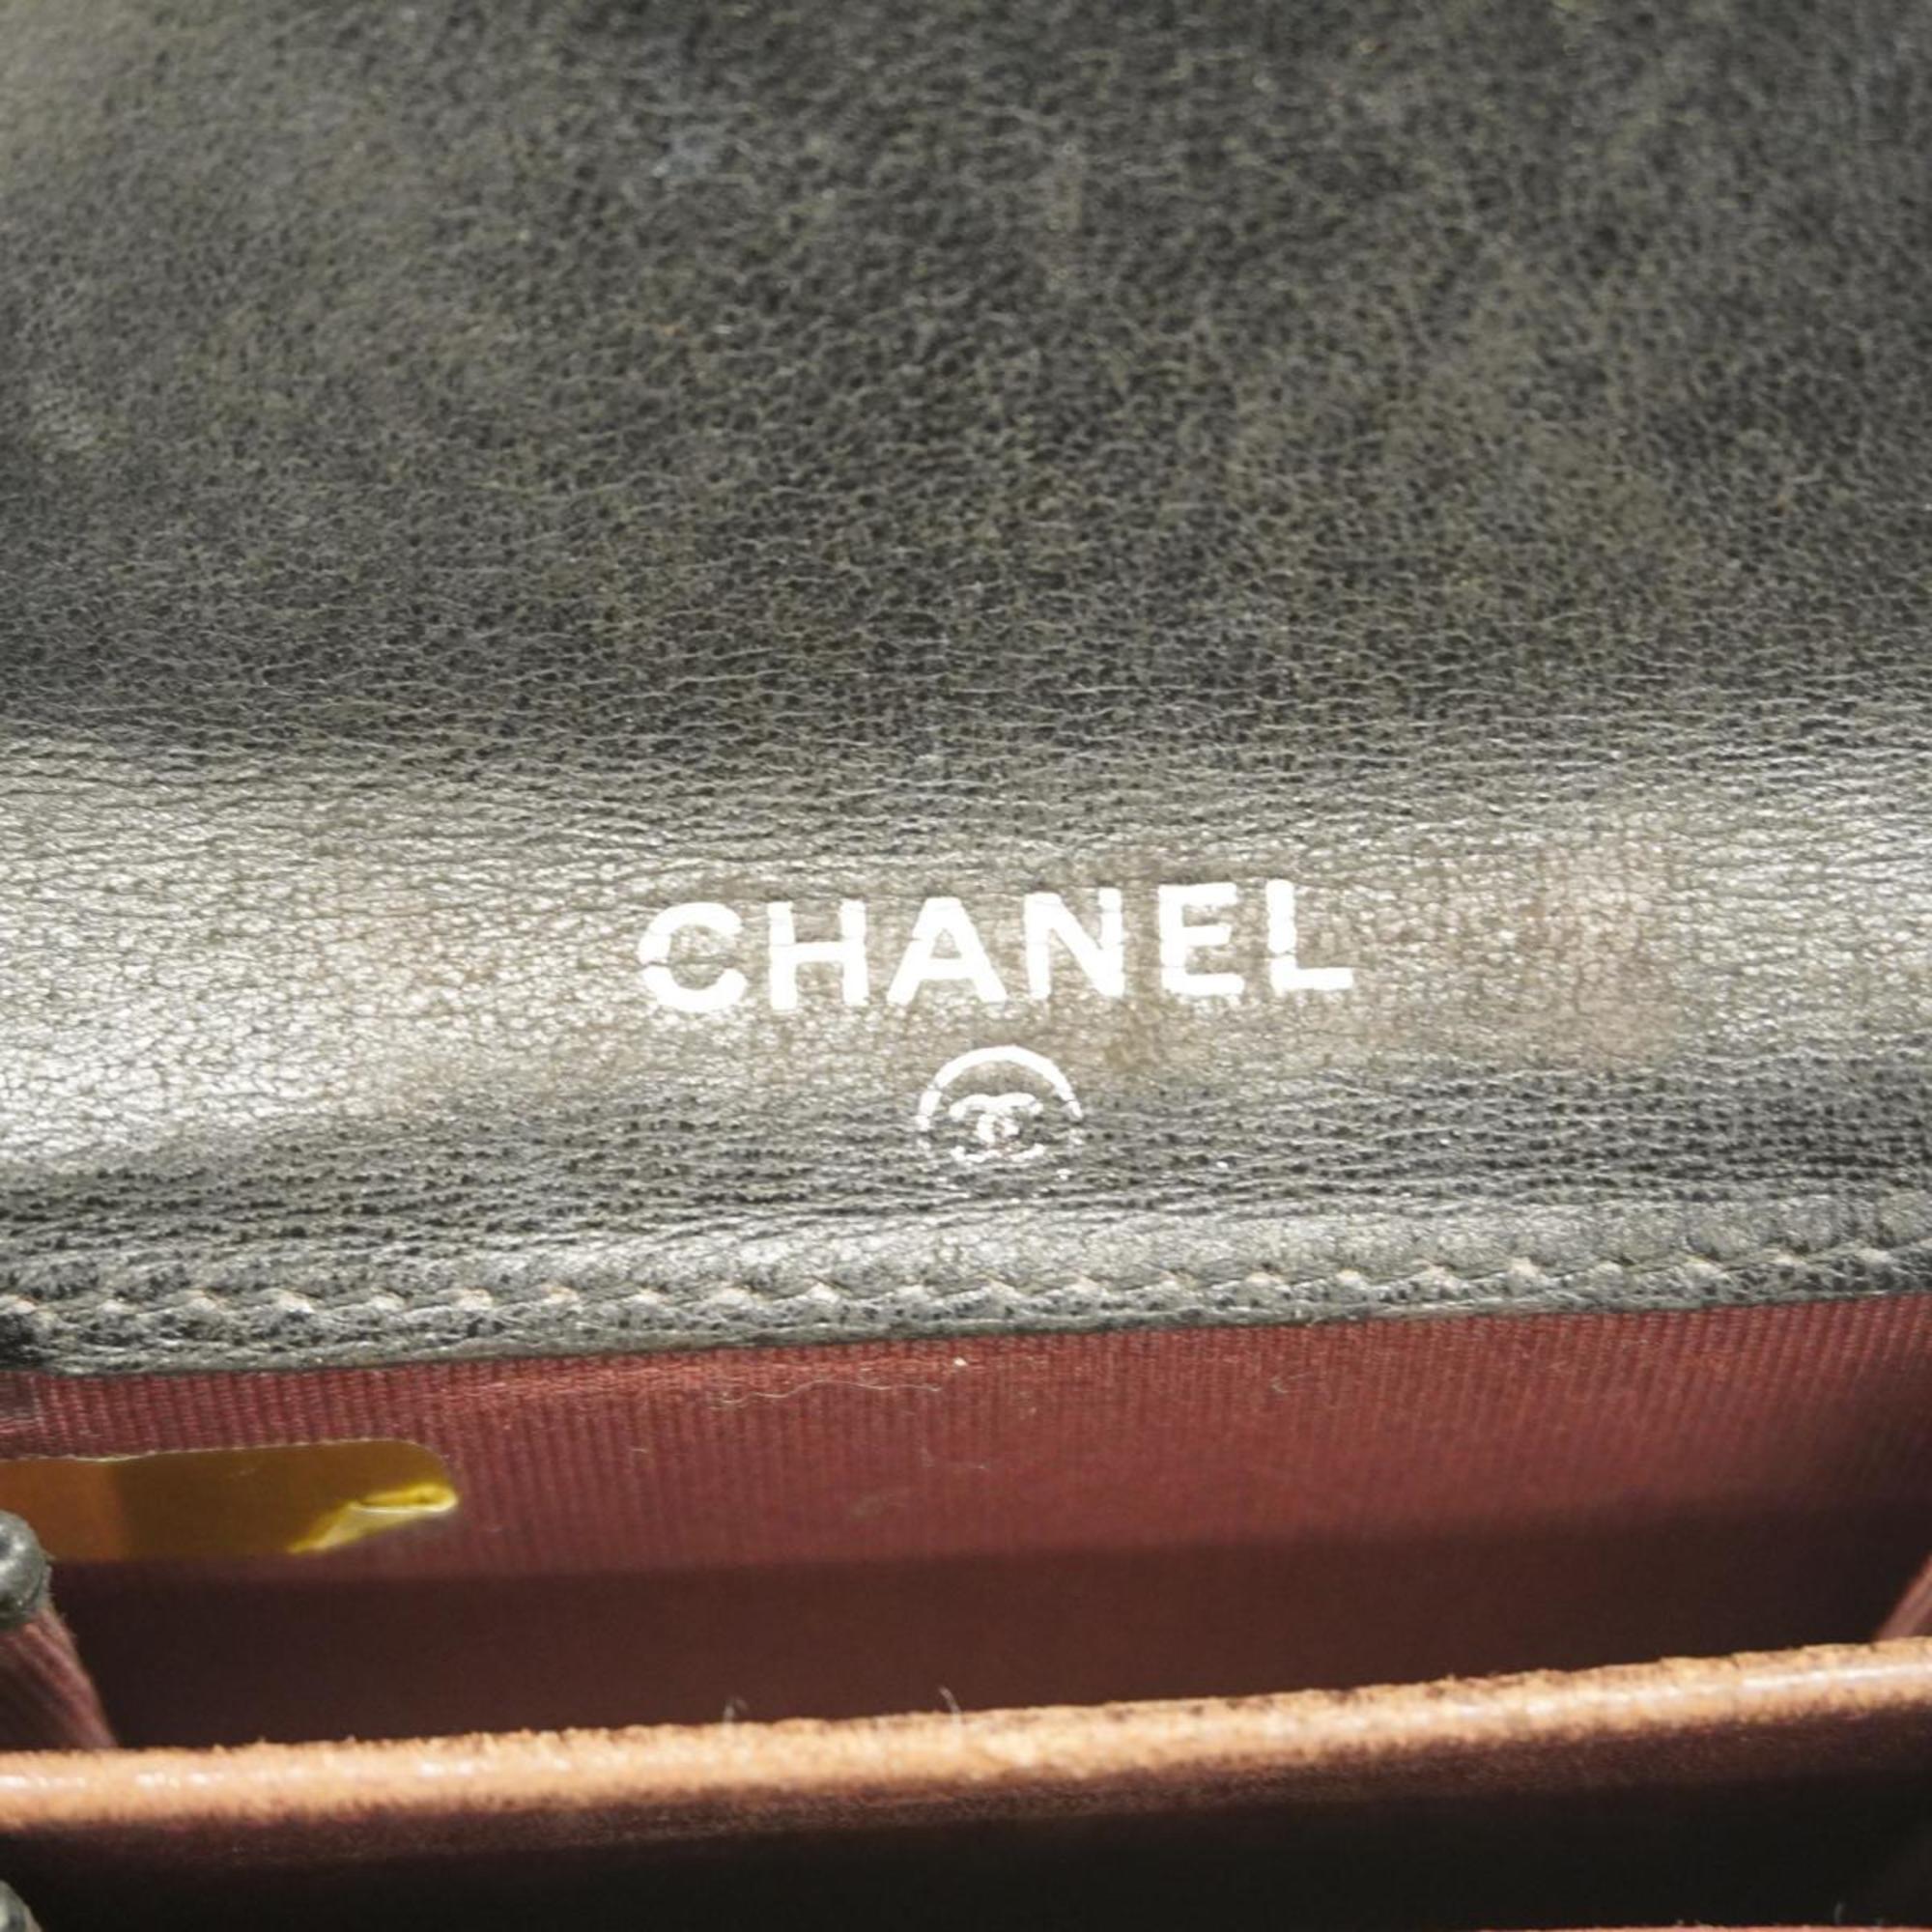 シャネル(Chanel) シャネル 名刺入れ マトラッセ ラムスキン ブラック   レディース